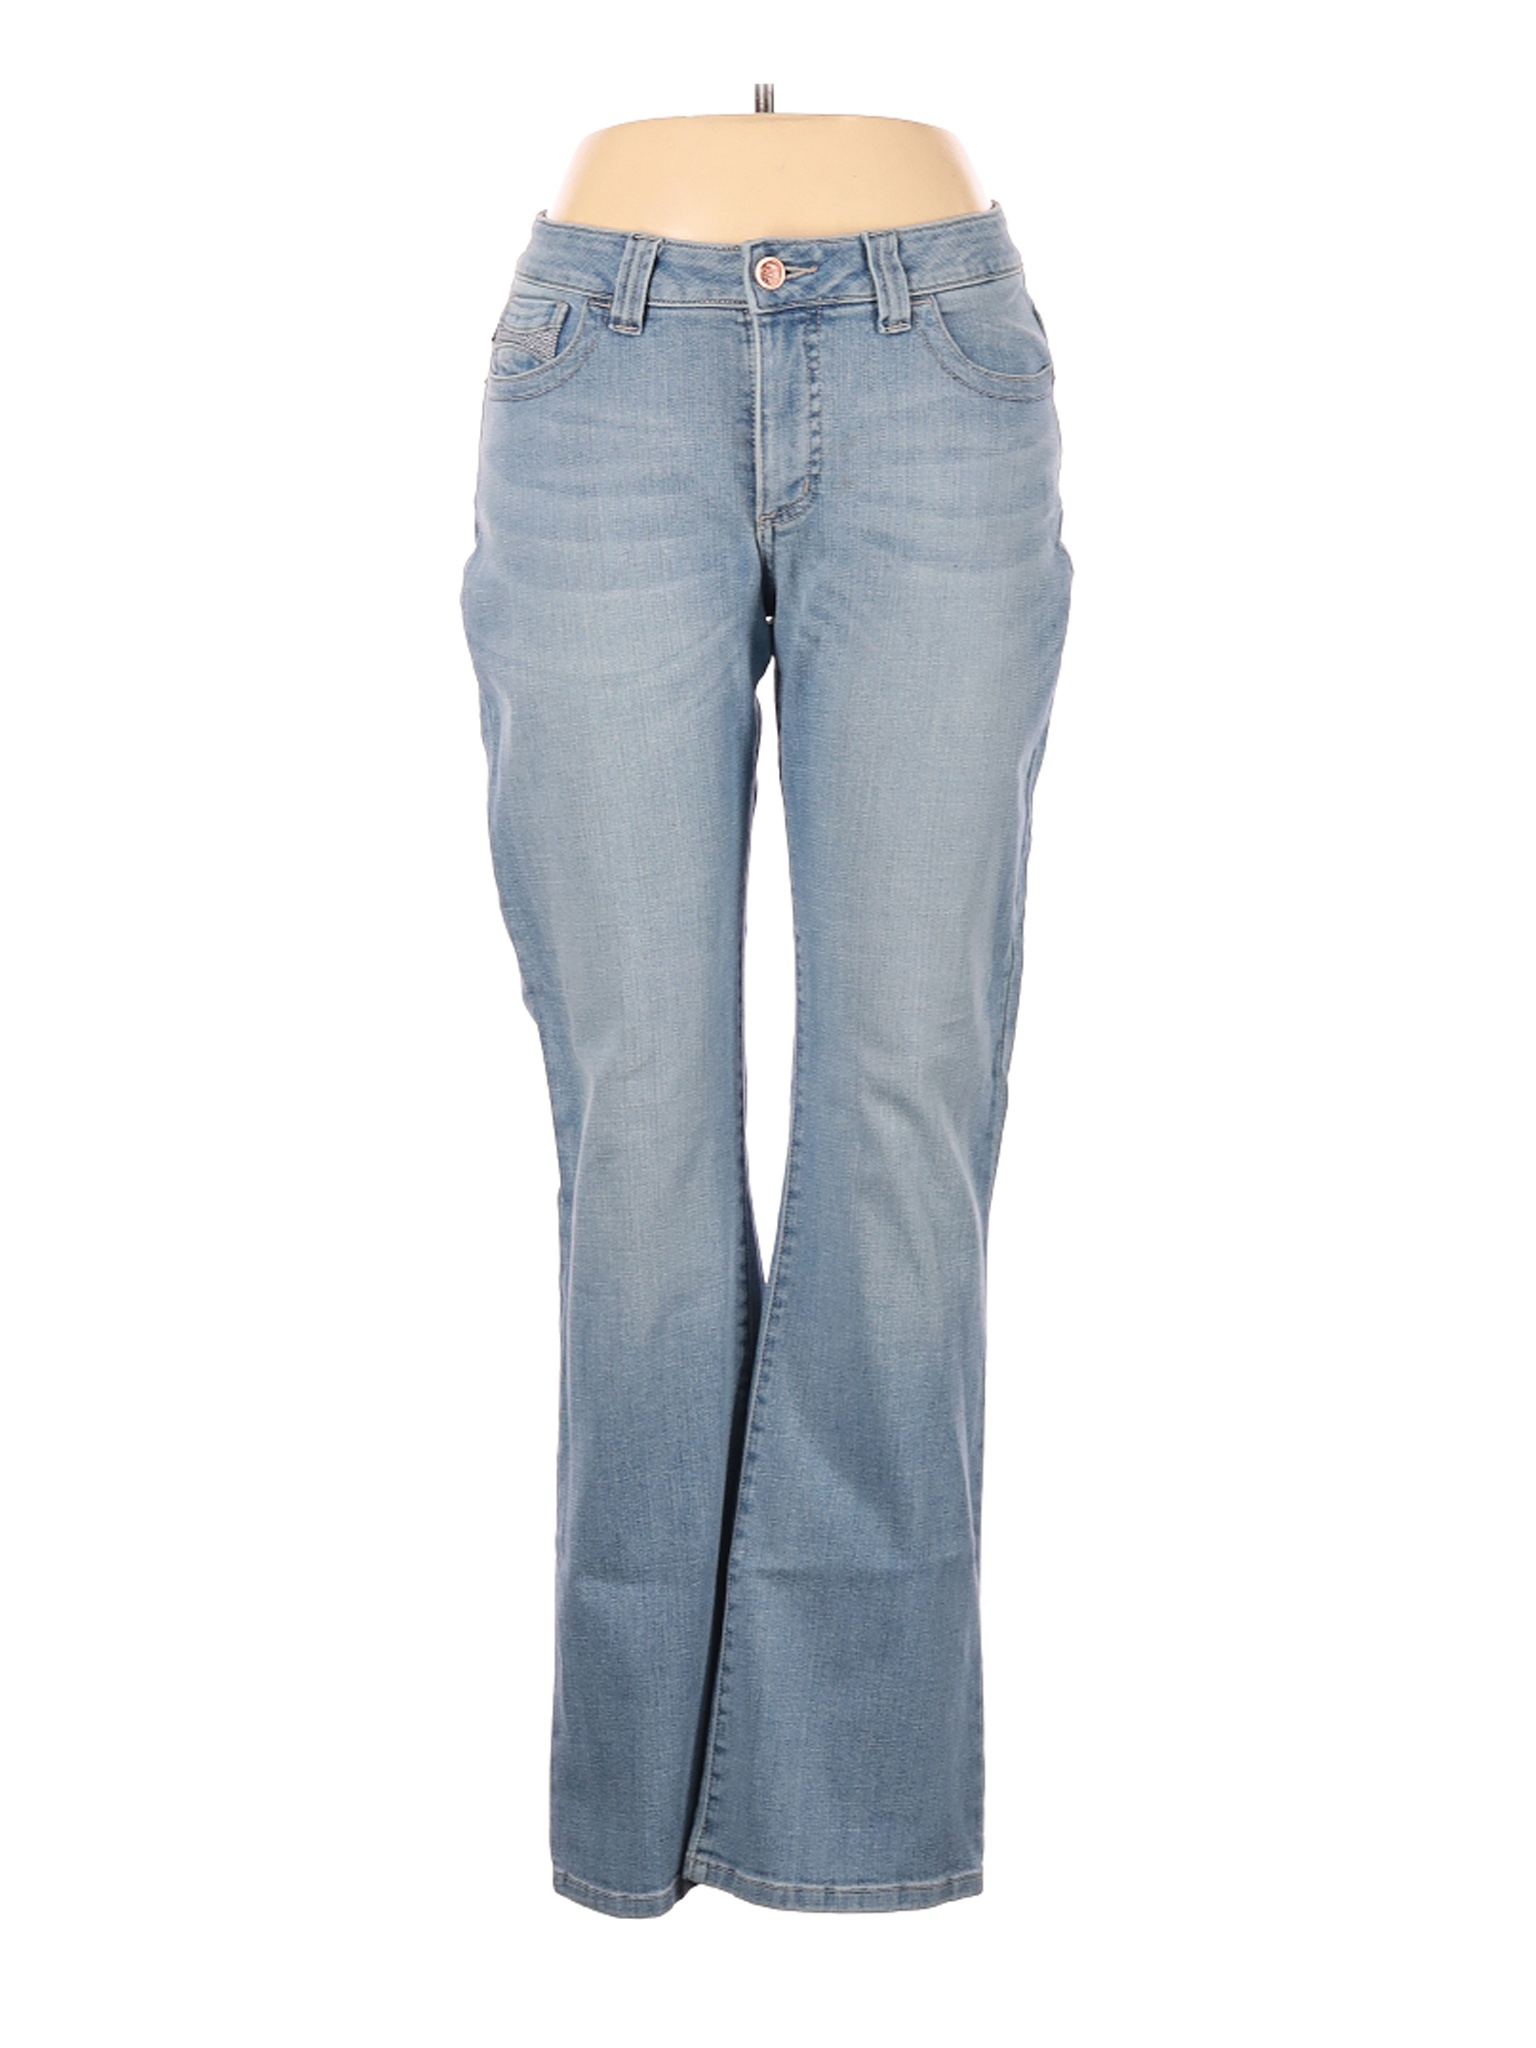 Lee Women Blue Jeans 10 | eBay